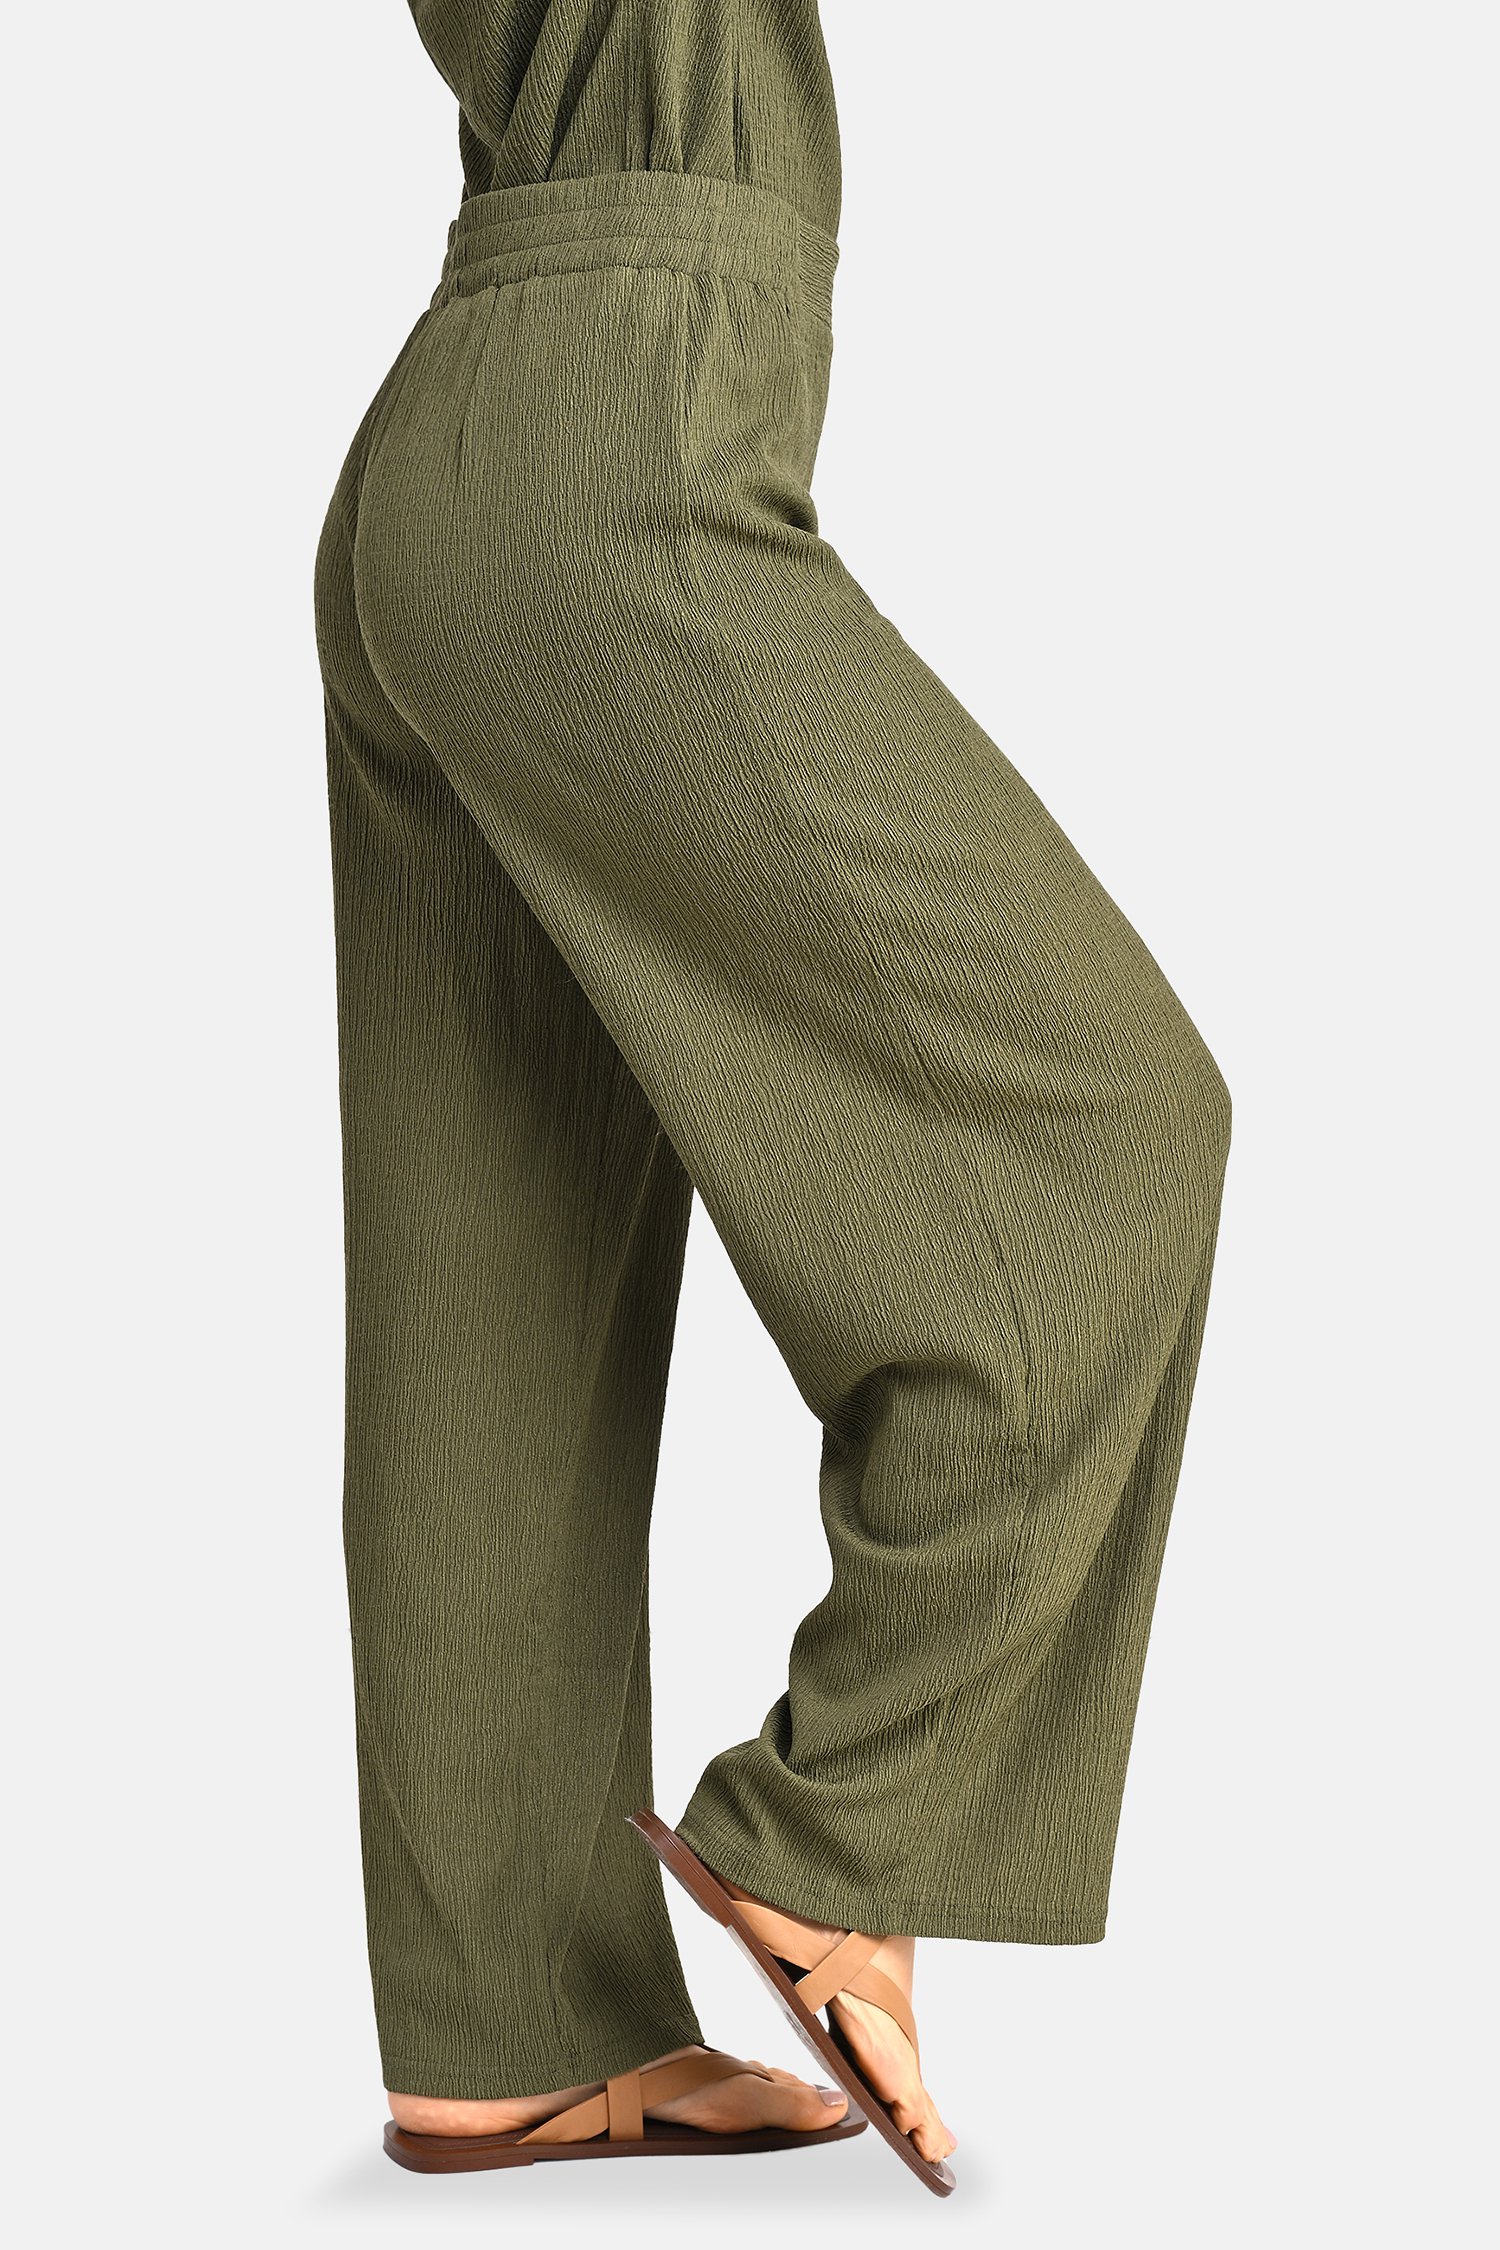 Wijde kaki broek met fijne structuur - 7/8 lengte van Bicalla voor Dames